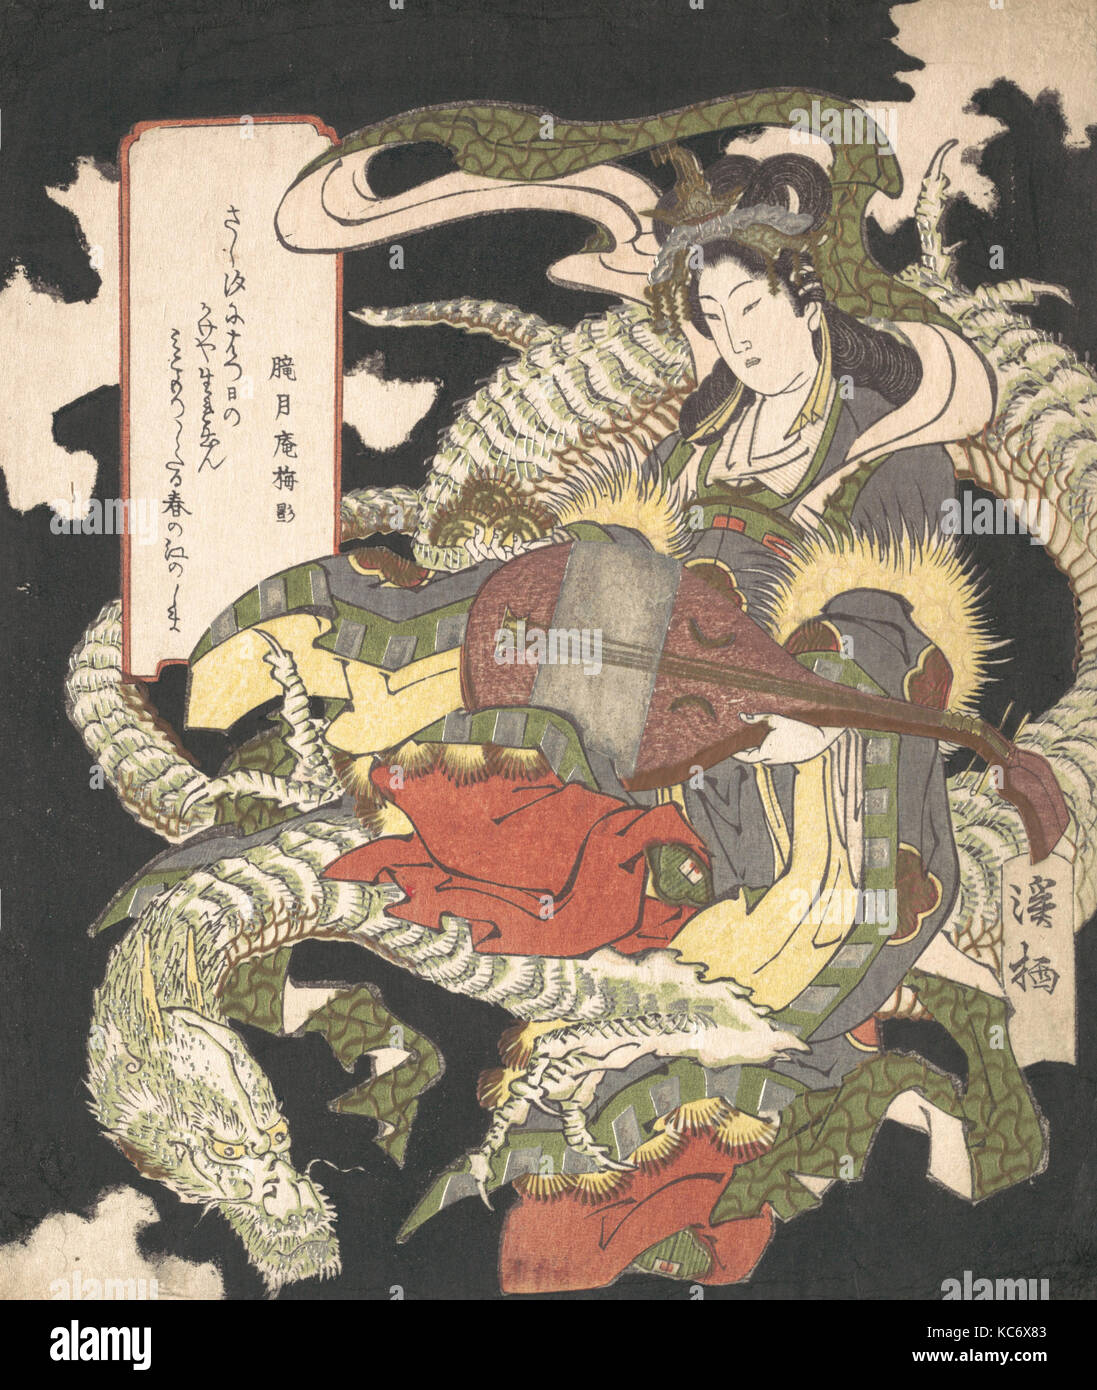 騎龍弁財天, Benzaiten (Goddess of Music and Good Fortune) Seated on a White Dragon, Aoigaoka Keisei, 1832 Stock Photo